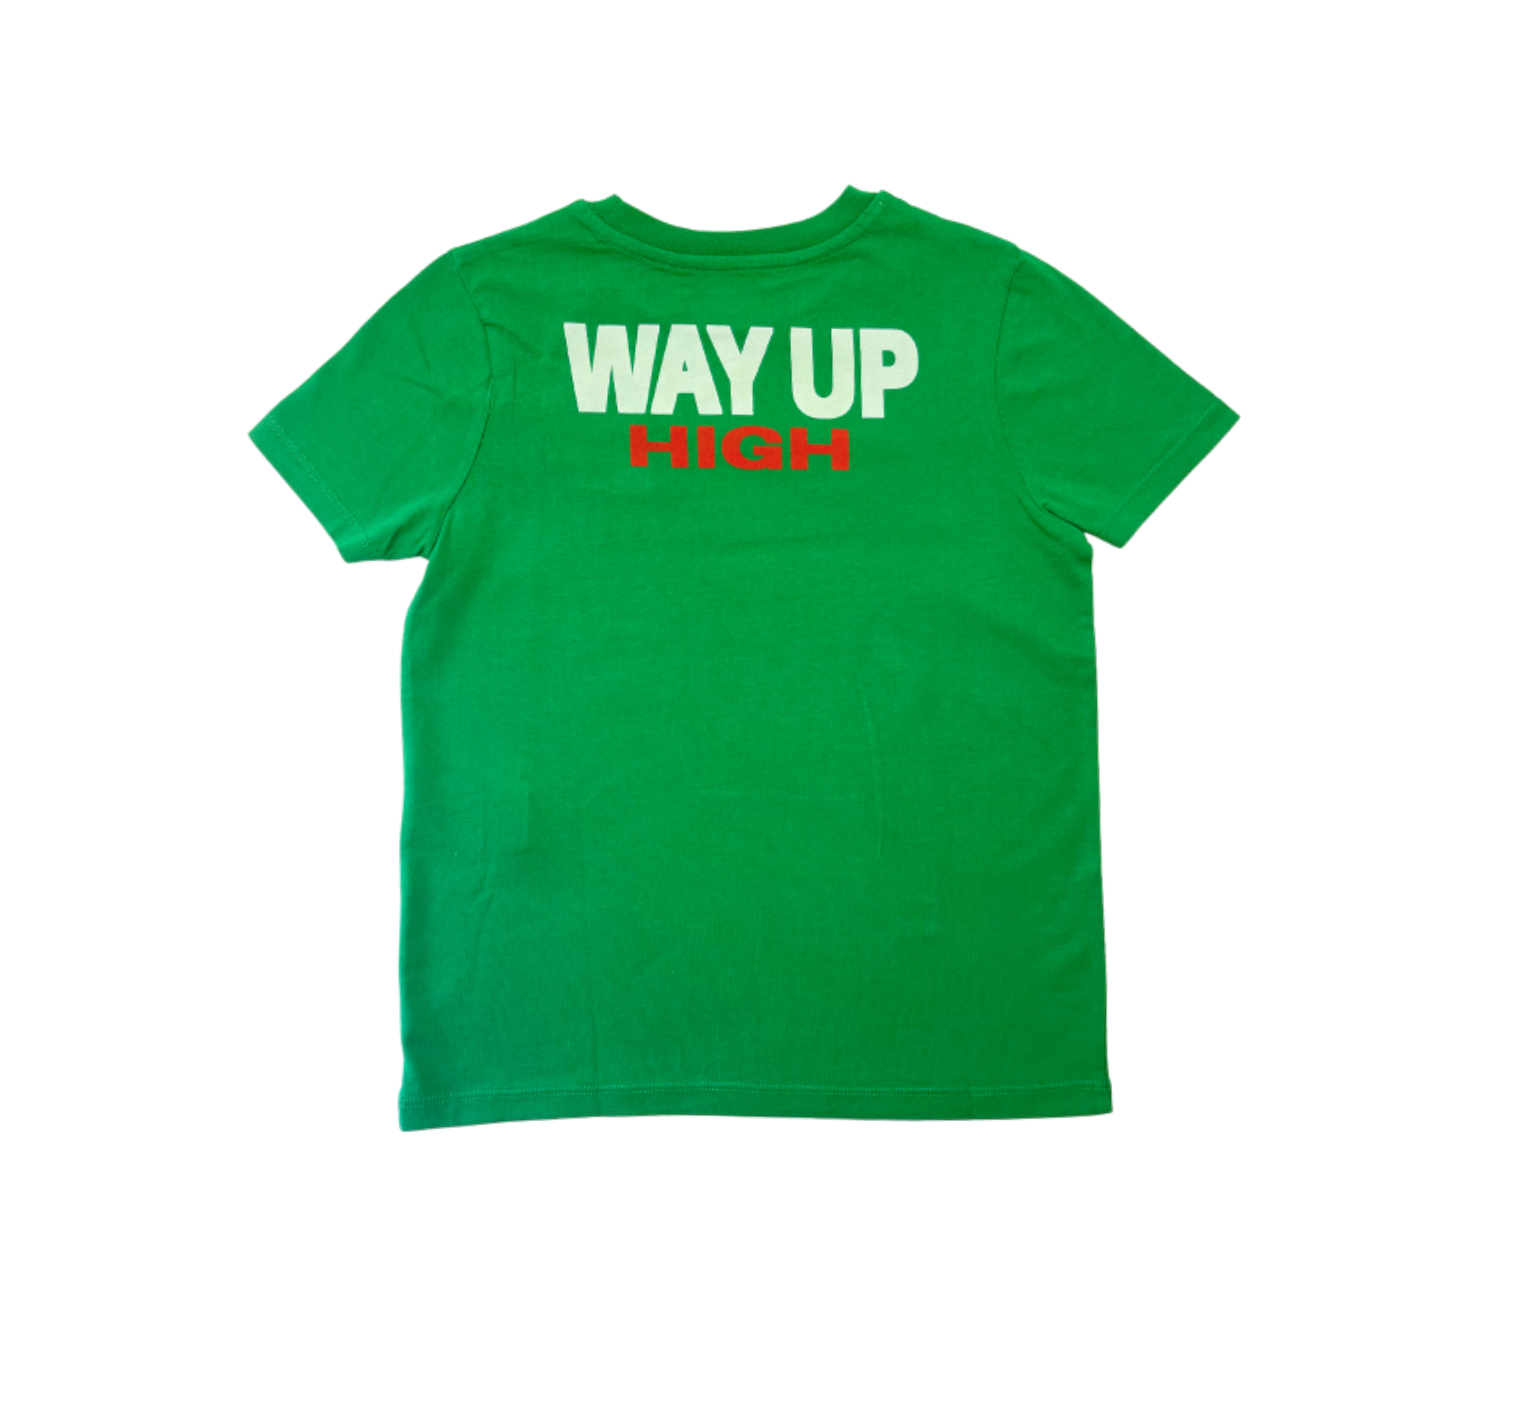 BELLEROSE - T-shirt Vert "Way up high" - 8 ans